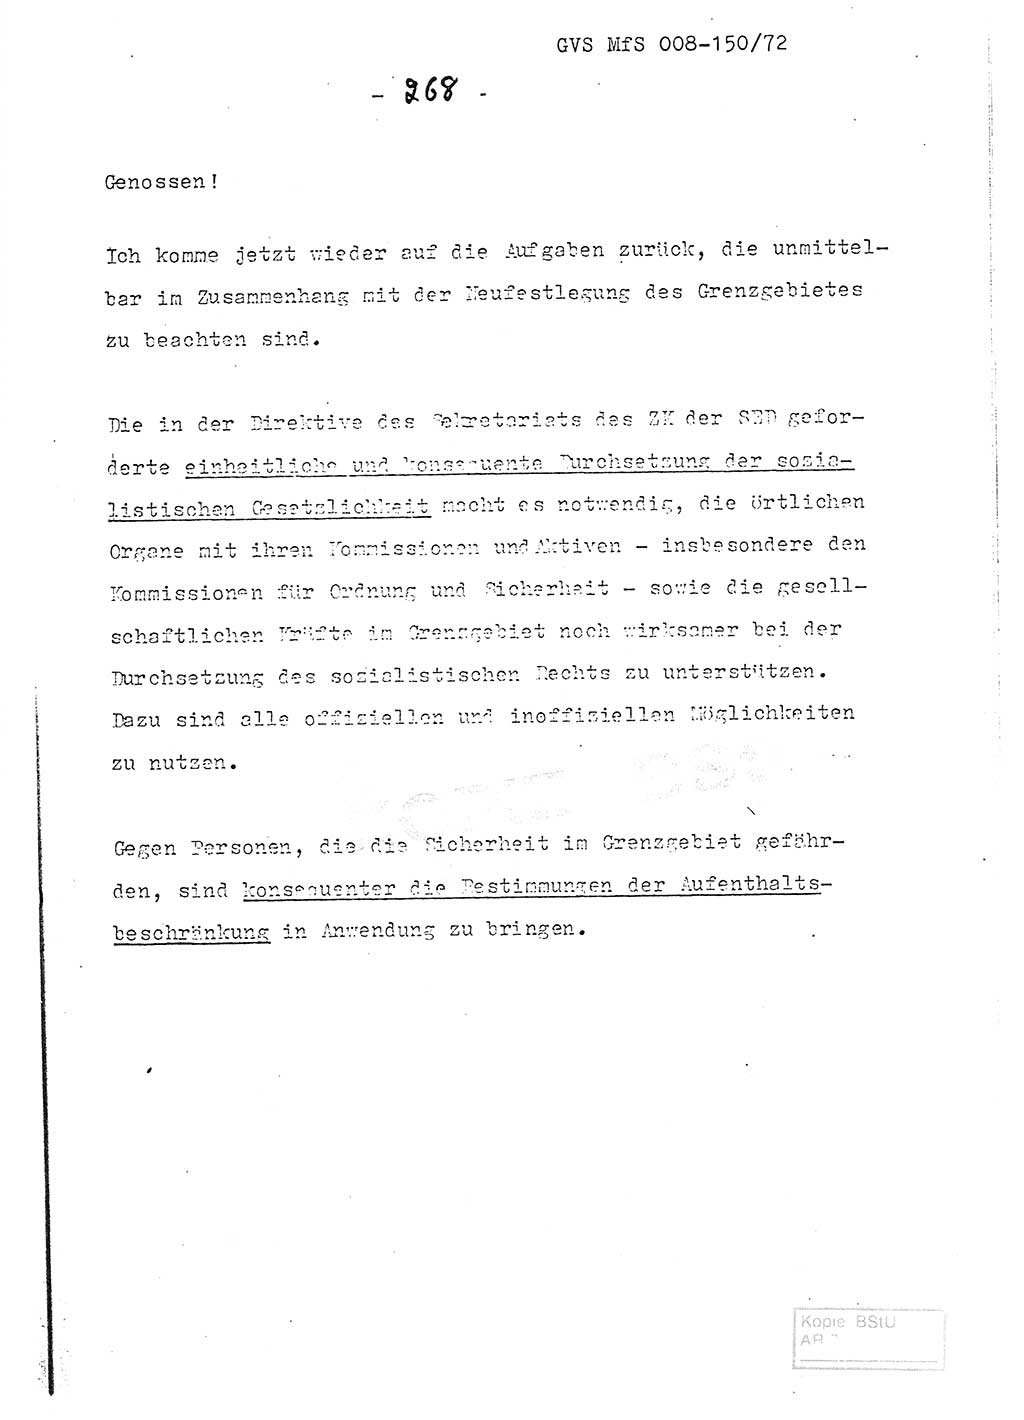 Referat (Entwurf) des Genossen Minister (Generaloberst Erich Mielke) auf der Dienstkonferenz 1972, Ministerium für Staatssicherheit (MfS) [Deutsche Demokratische Republik (DDR)], Der Minister, Geheime Verschlußsache (GVS) 008-150/72, Berlin 25.2.1972, Seite 268 (Ref. Entw. DK MfS DDR Min. GVS 008-150/72 1972, S. 268)